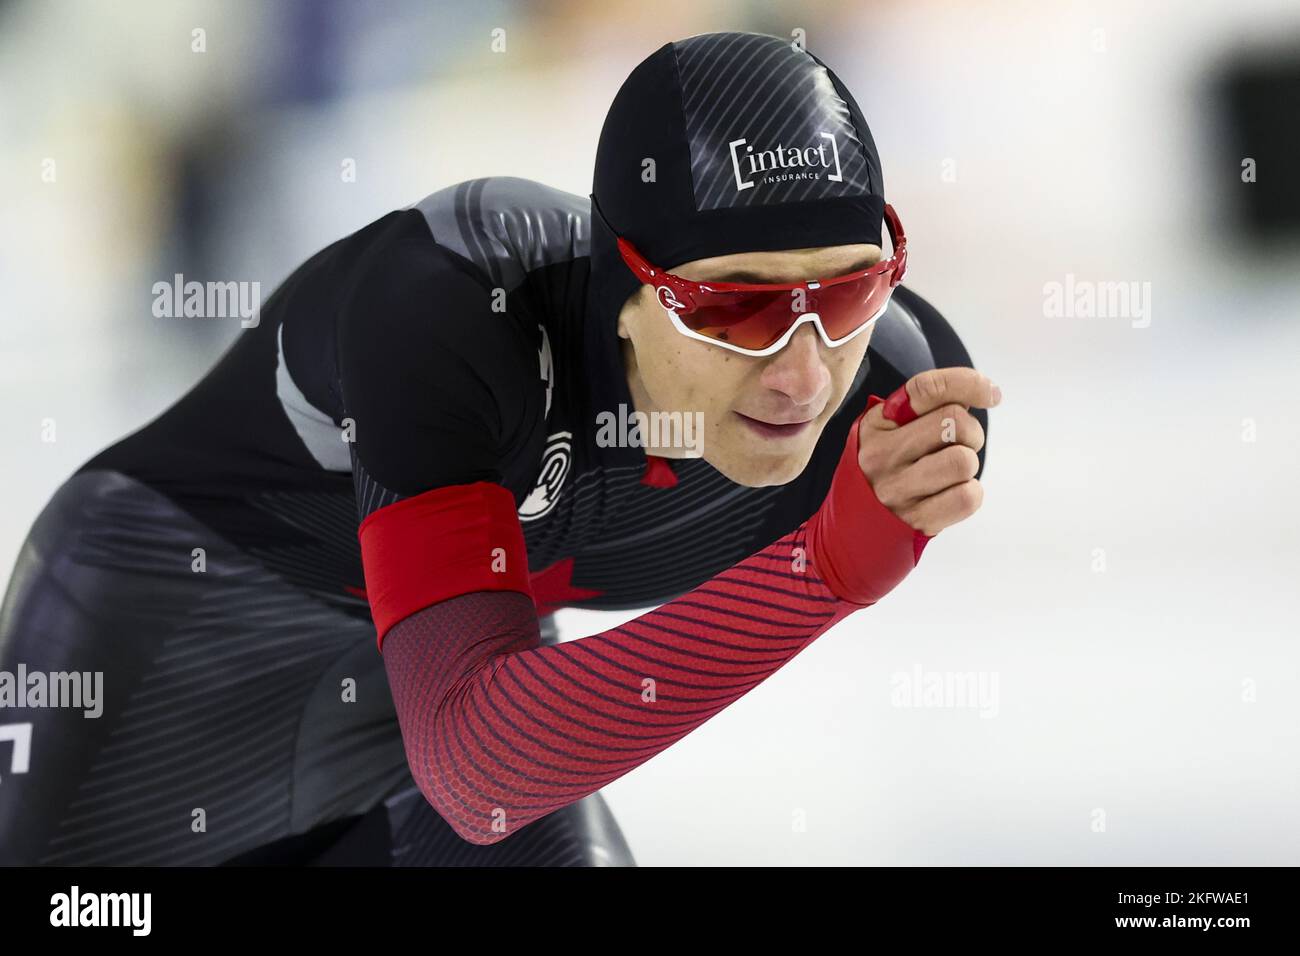 HERENVEEN - Connor Howe (CAN) im Einsatz auf den 1500 Metern beim zweiten ISU Long Track World Cup Turnier in Thialf. ANP VINCENT JANNINK Stockfoto